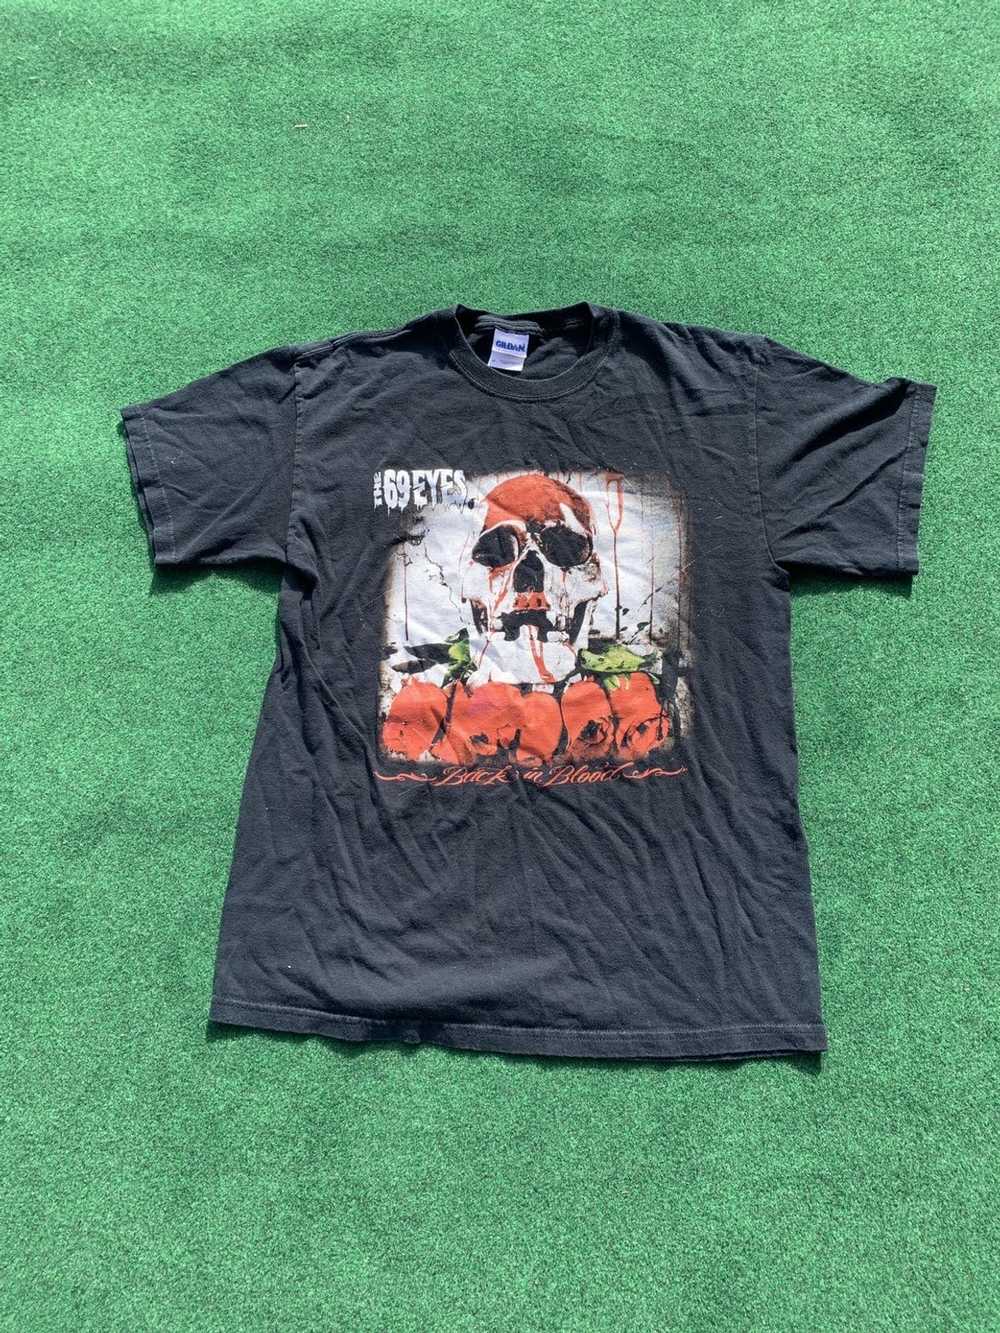 Band Tees × Rock Band × Rock T Shirt Rare The 69 … - image 1